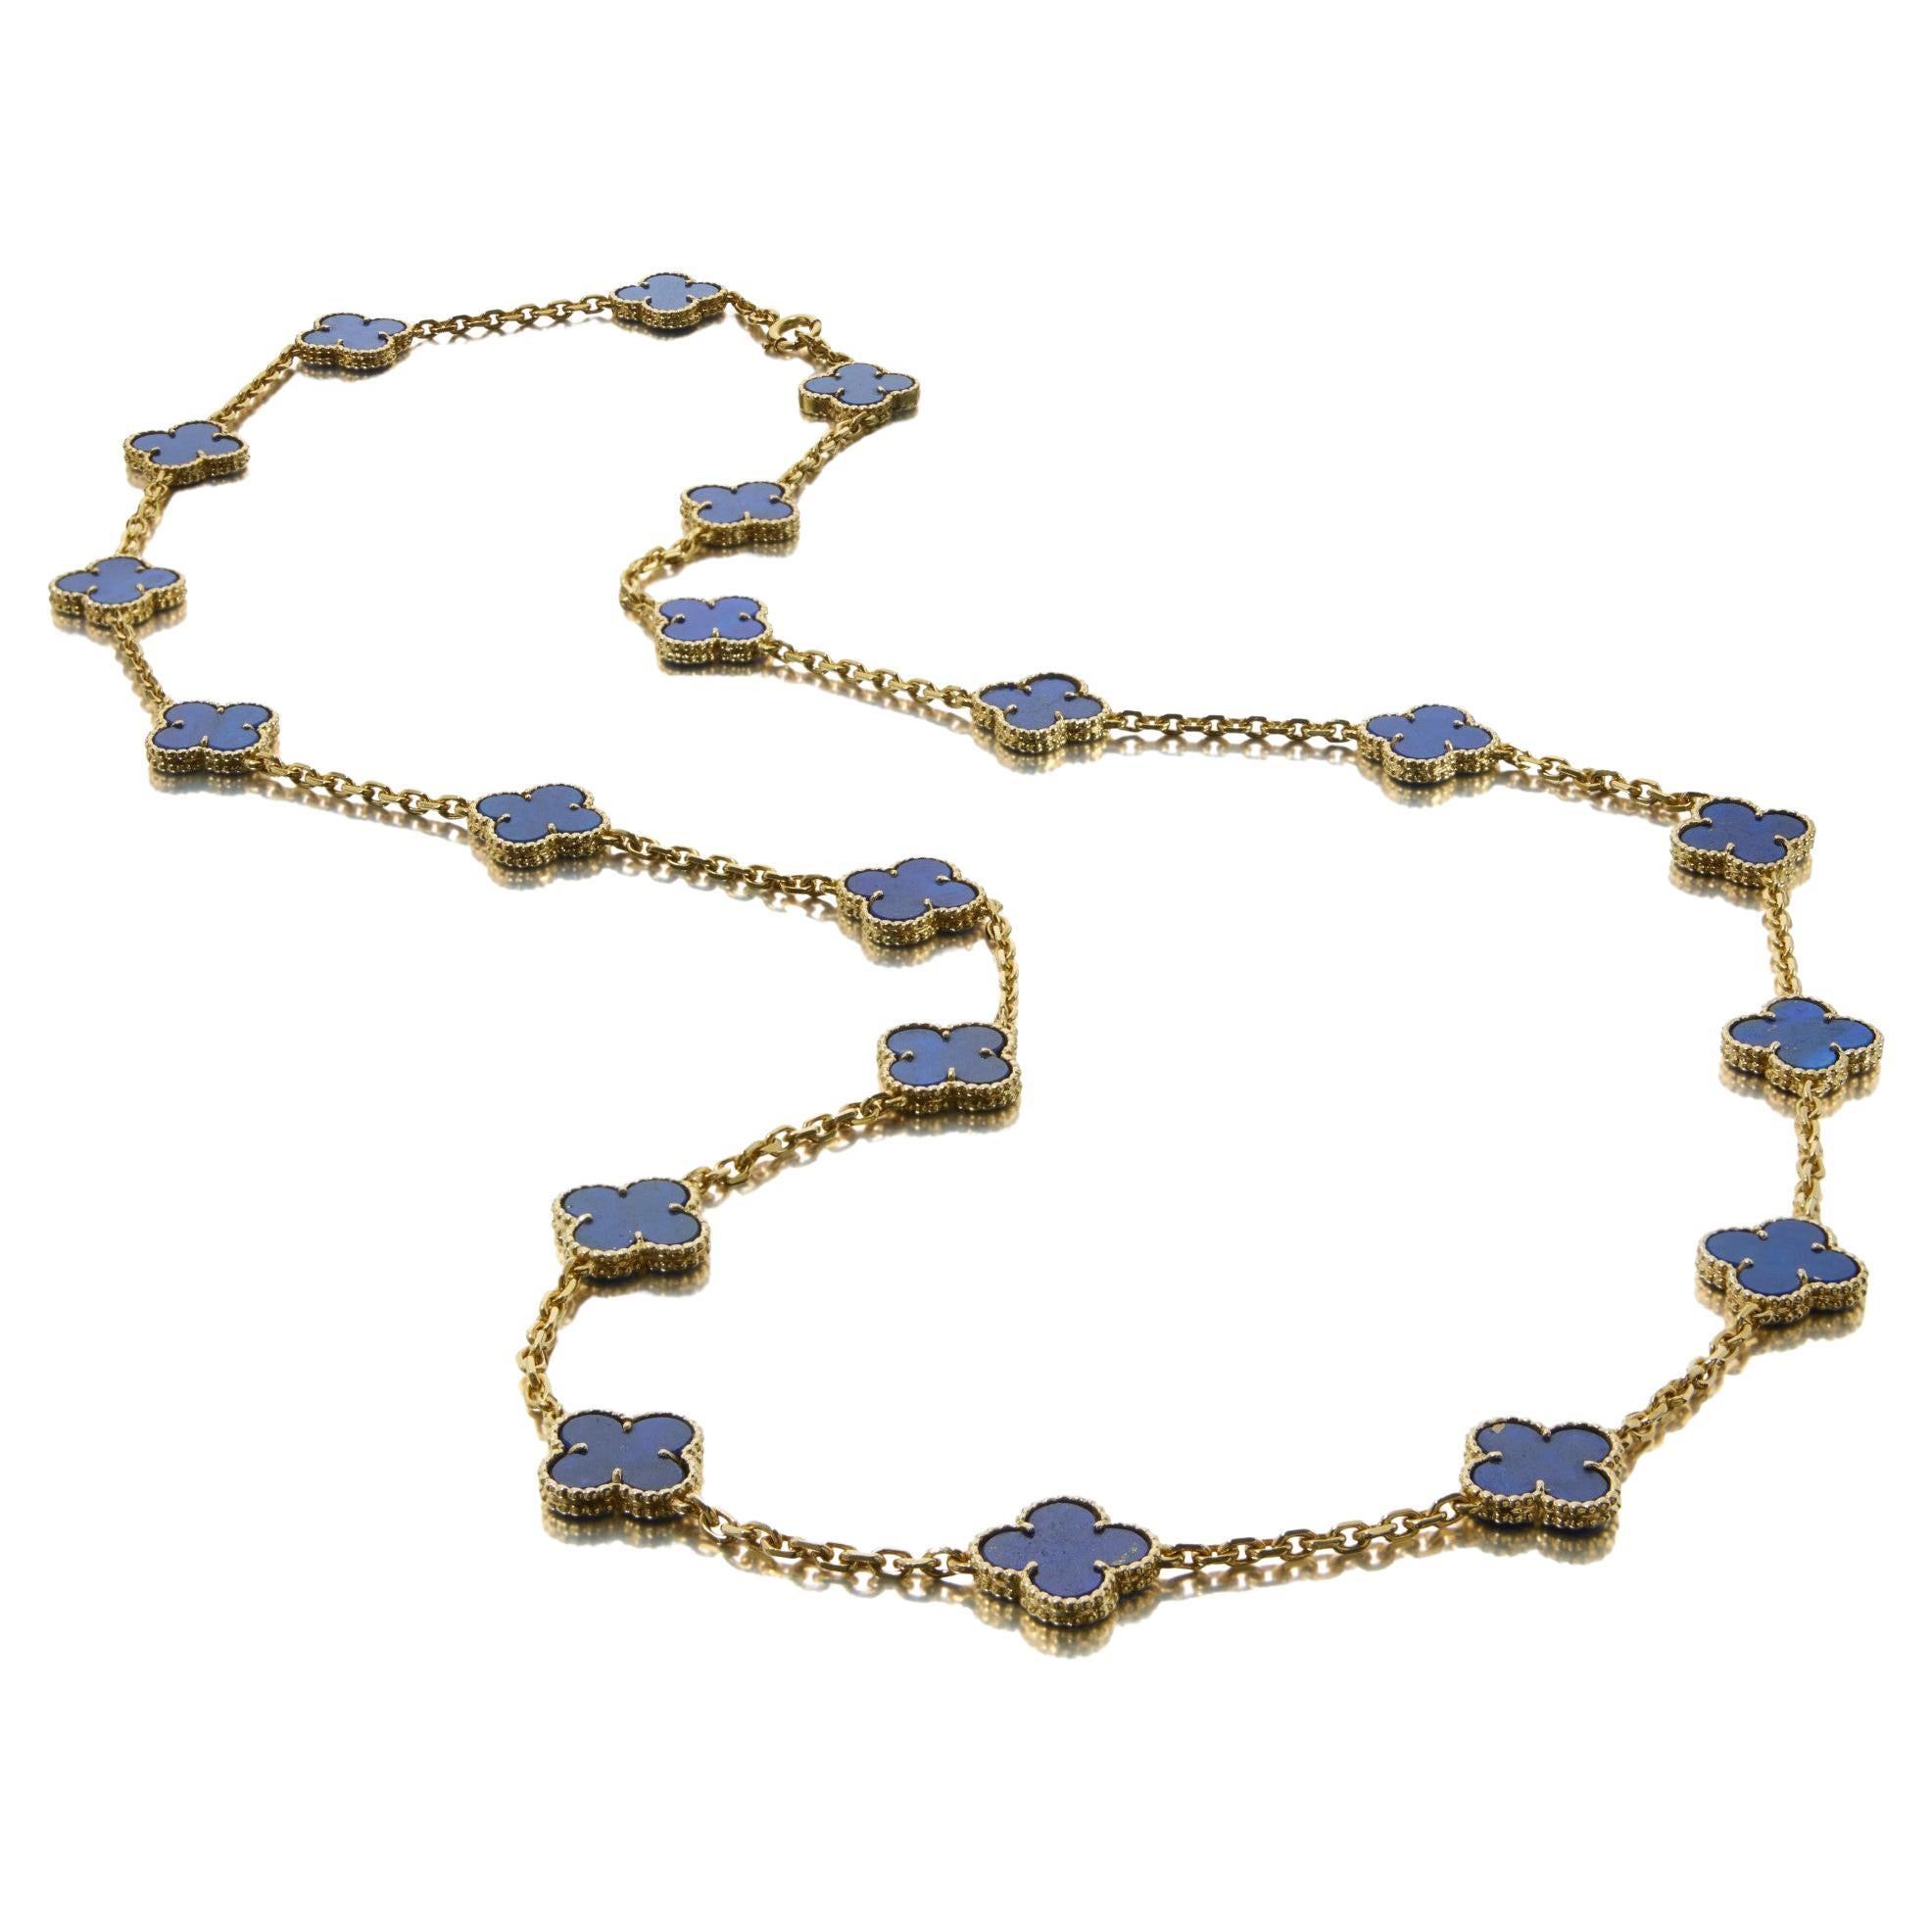 Van Cleef & Arpels Collier Vintage Alhambra en or 18 carats et lapis-lazuli
l'or jaune. Ce collier est composé de 20 motifs quadrilobés en lapis-lazuli sur une chaîne en or jaune 18 carats. Chaque motif mesure environ 15 mm. Équipé d'une fermeture à